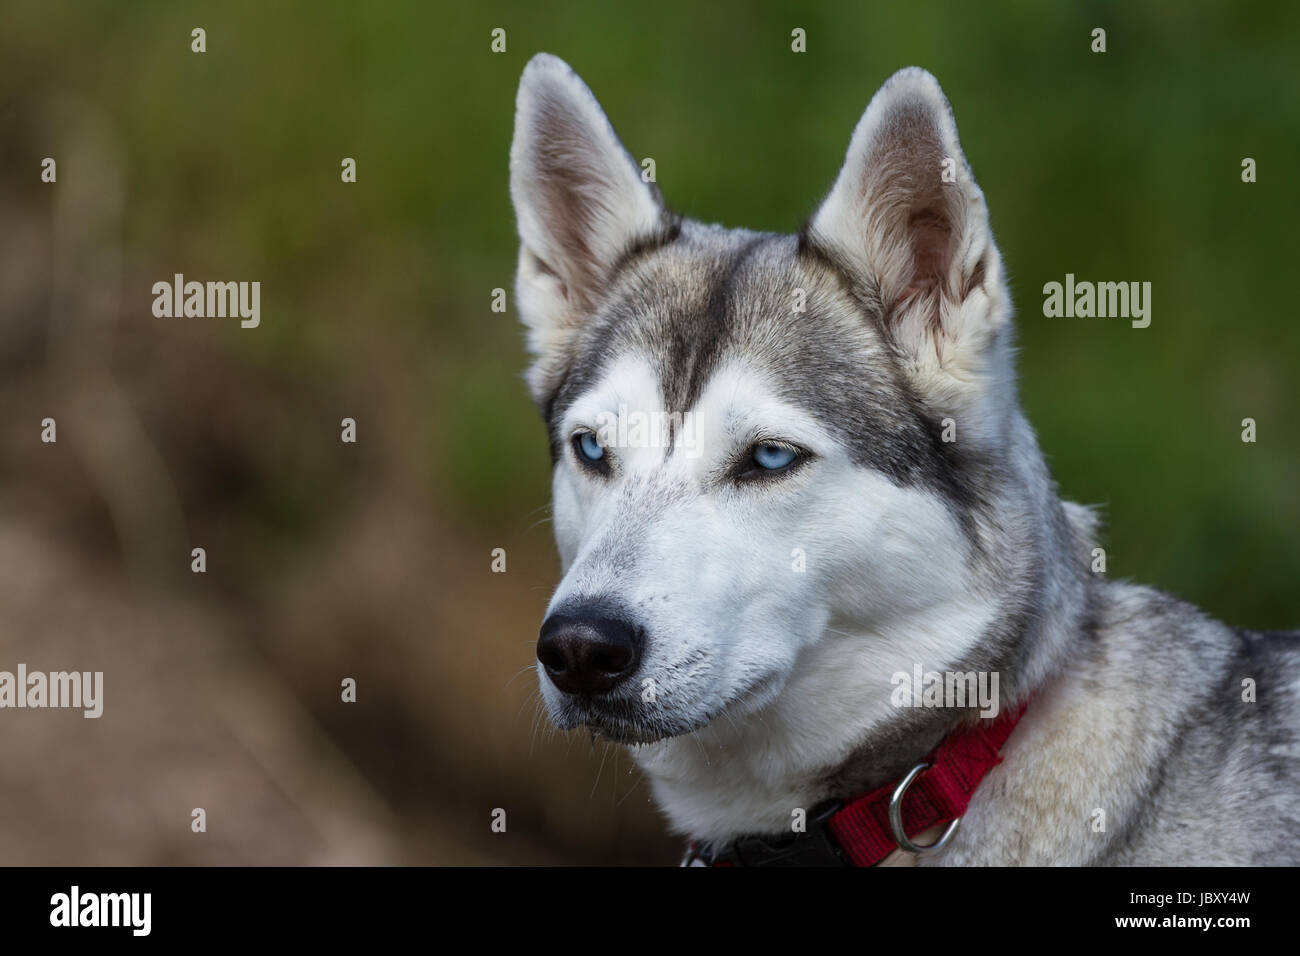 Ein Husky mit blauen Augen und einem roten Halsband blickt leicht aus dem  Bild heraus Stock Photo - Alamy